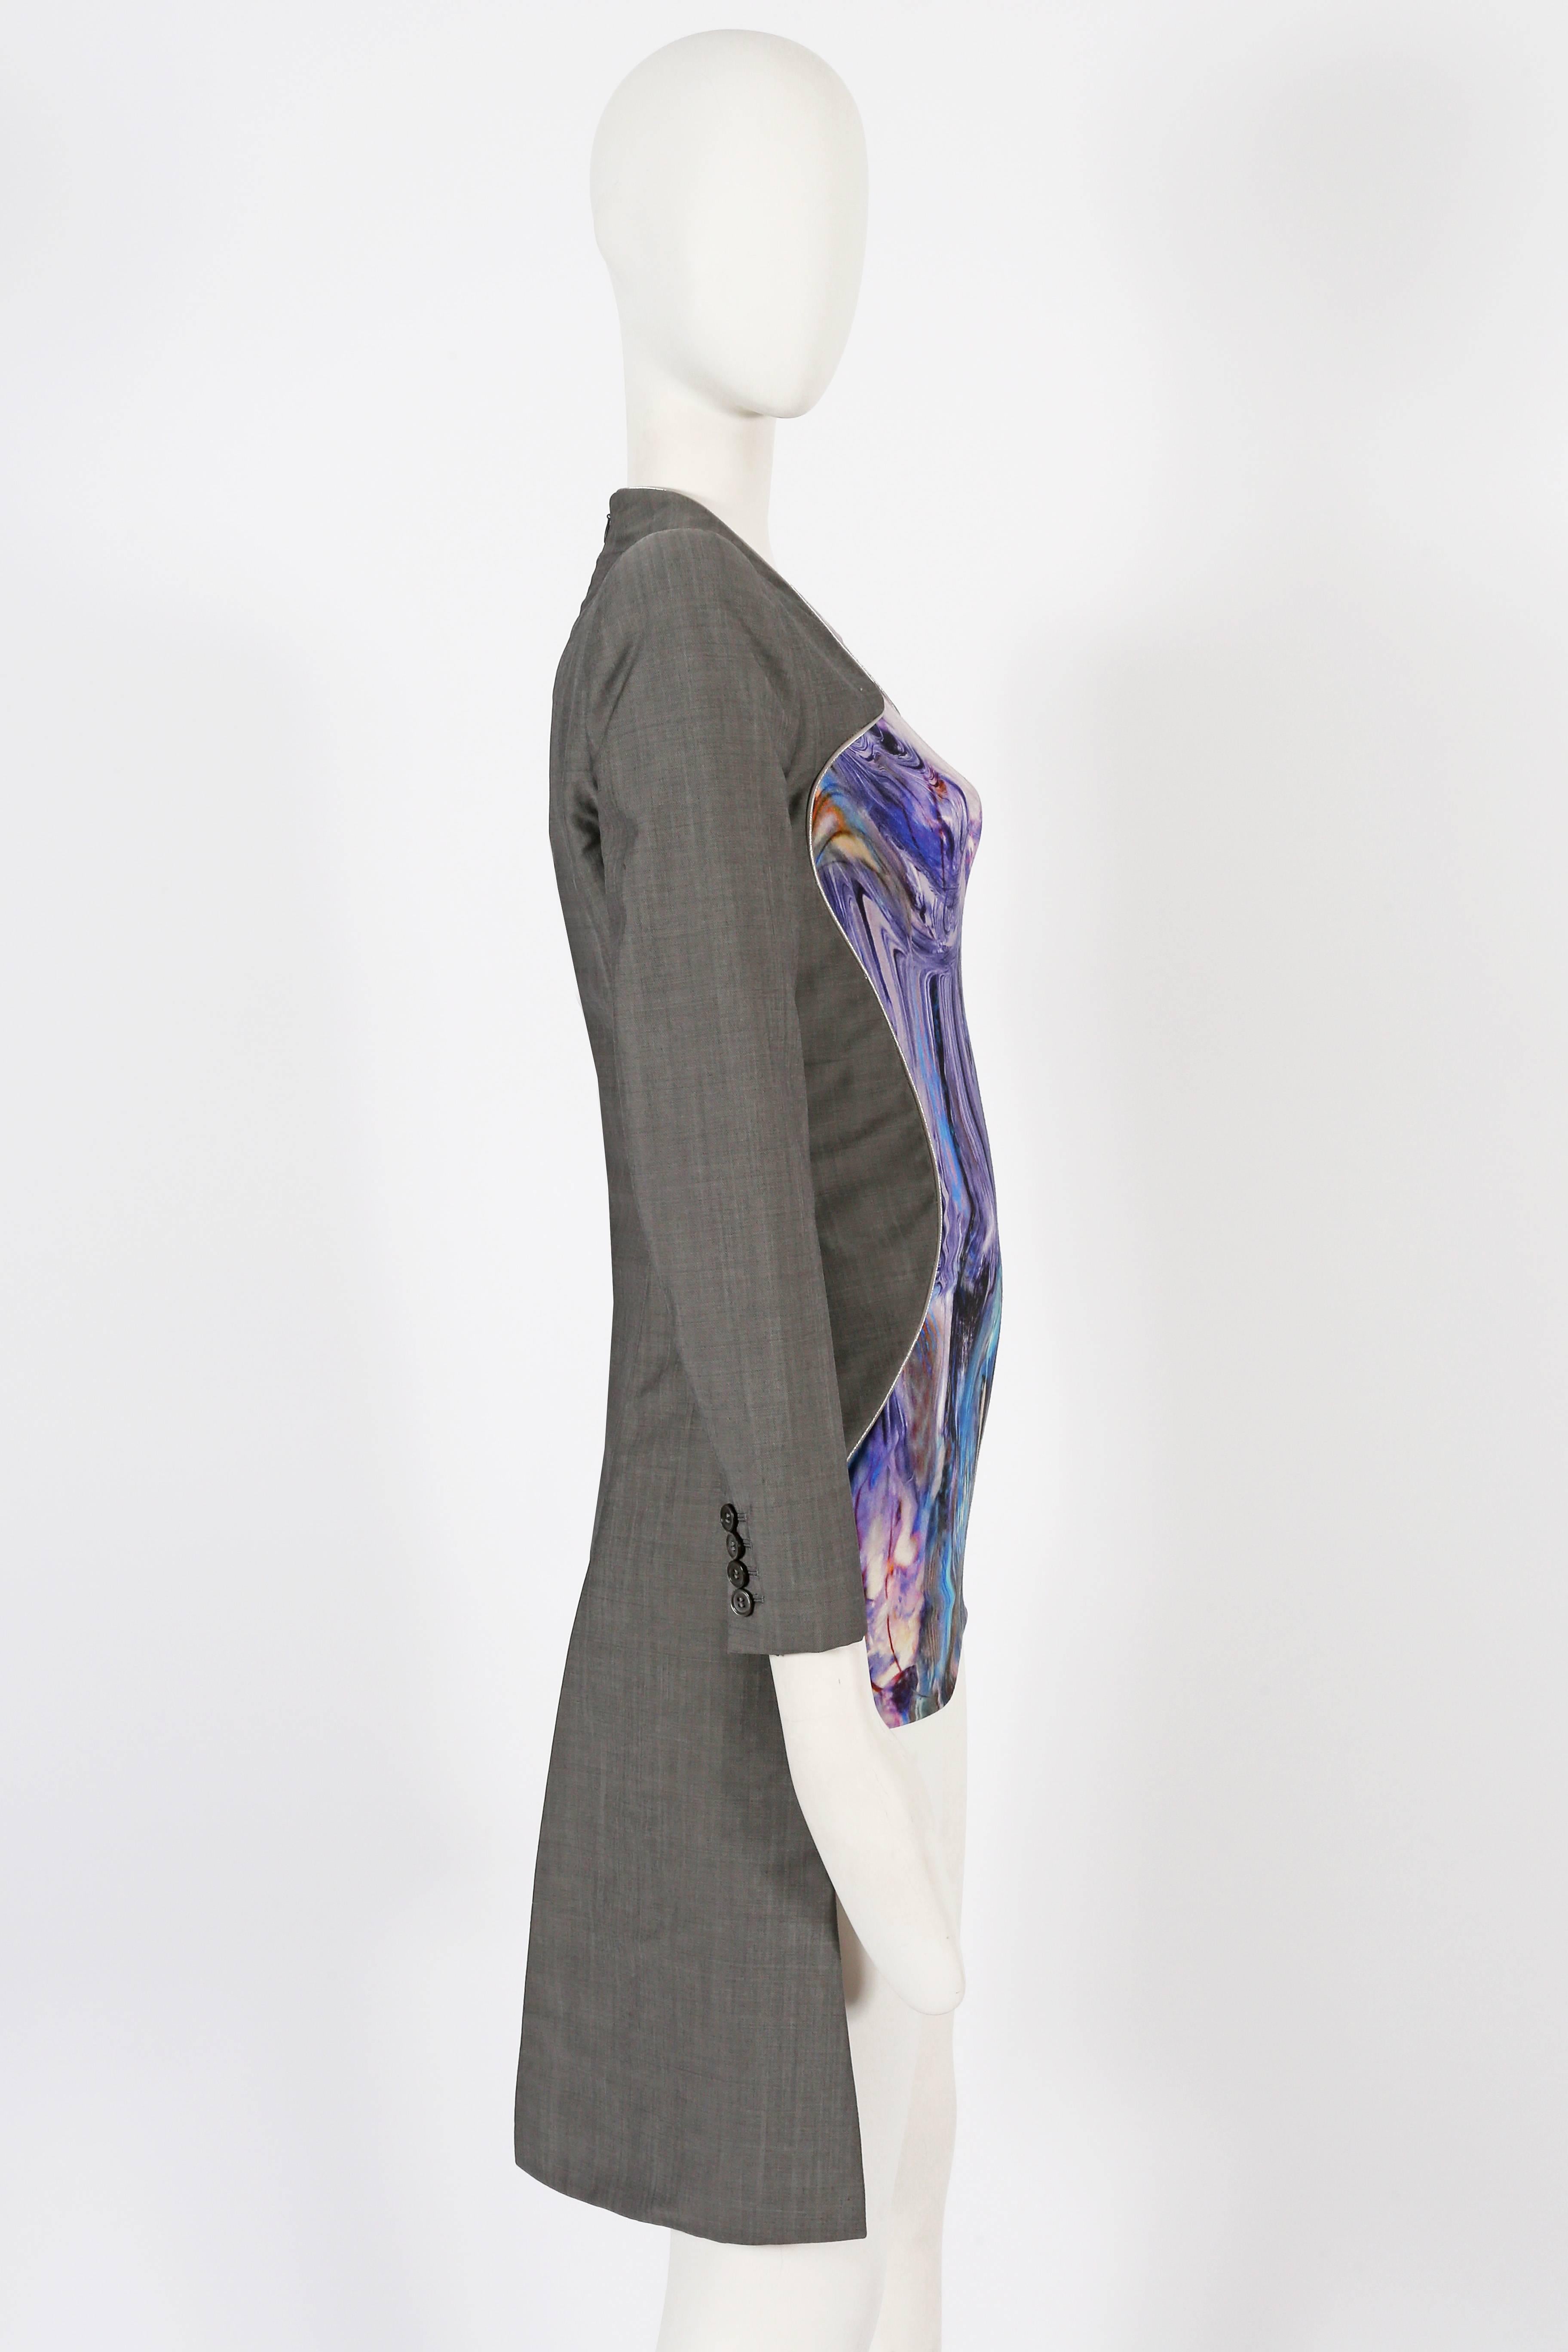 Gray Alexander McQueen, Plato's Atlantis mini dress, Spring/Summer 2010